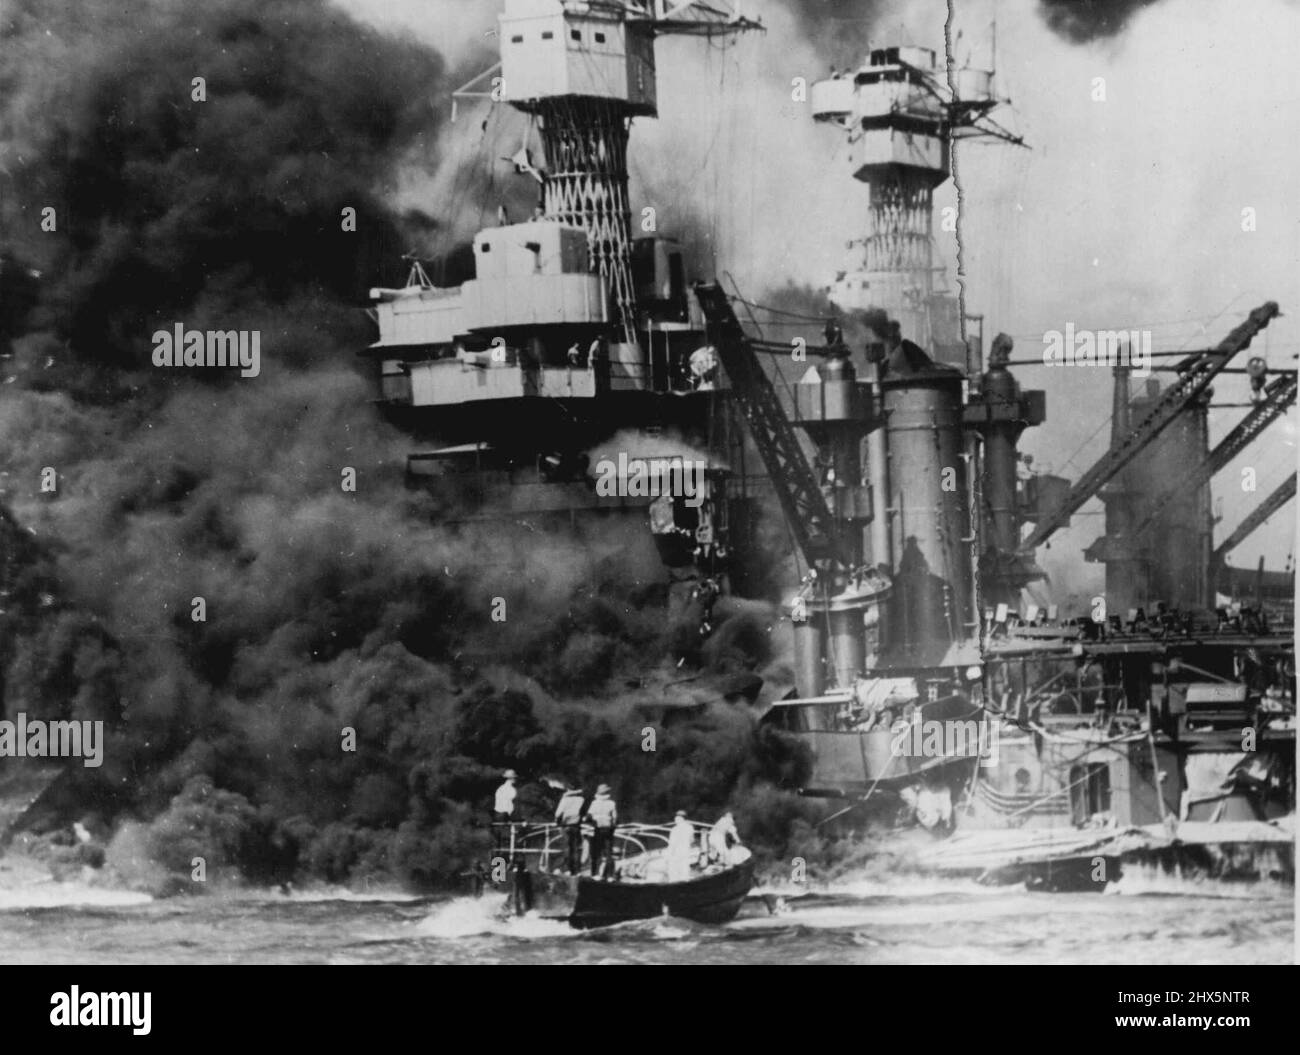 Ein kleines Boot rettet Seeleute aus den 31.800 Tonnen U.S.S. West Virginia brennt im Vordergrund. Rauch, der mittschiffs ausrollt, zeigt, wo der größte Schaden entstanden ist. Man beachte die beiden Männer im Überbau. Der US-Bundesstaat Tennessee ist im Boot. 26. Januar 1943. (Foto von Fox Photos). Stockfoto